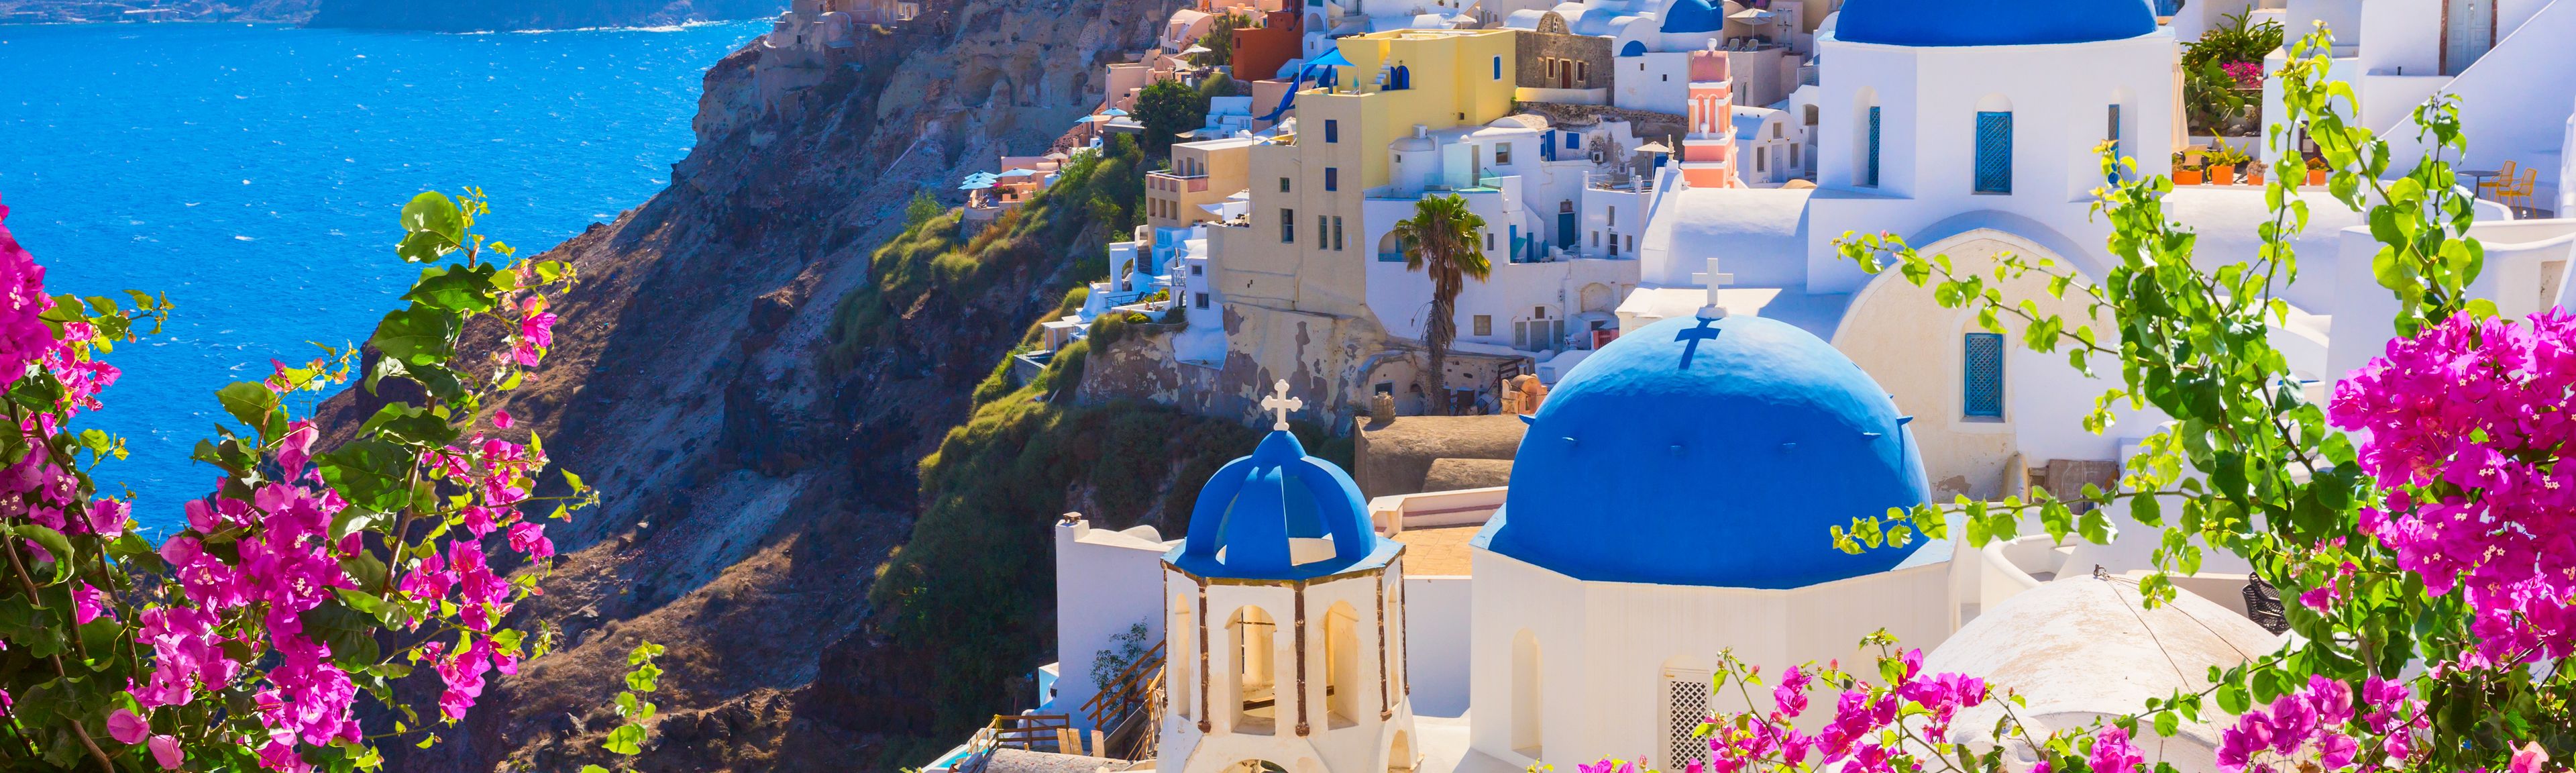 Białe domy z niebieskimi dachami i morze w tle pokazują typową Grecję